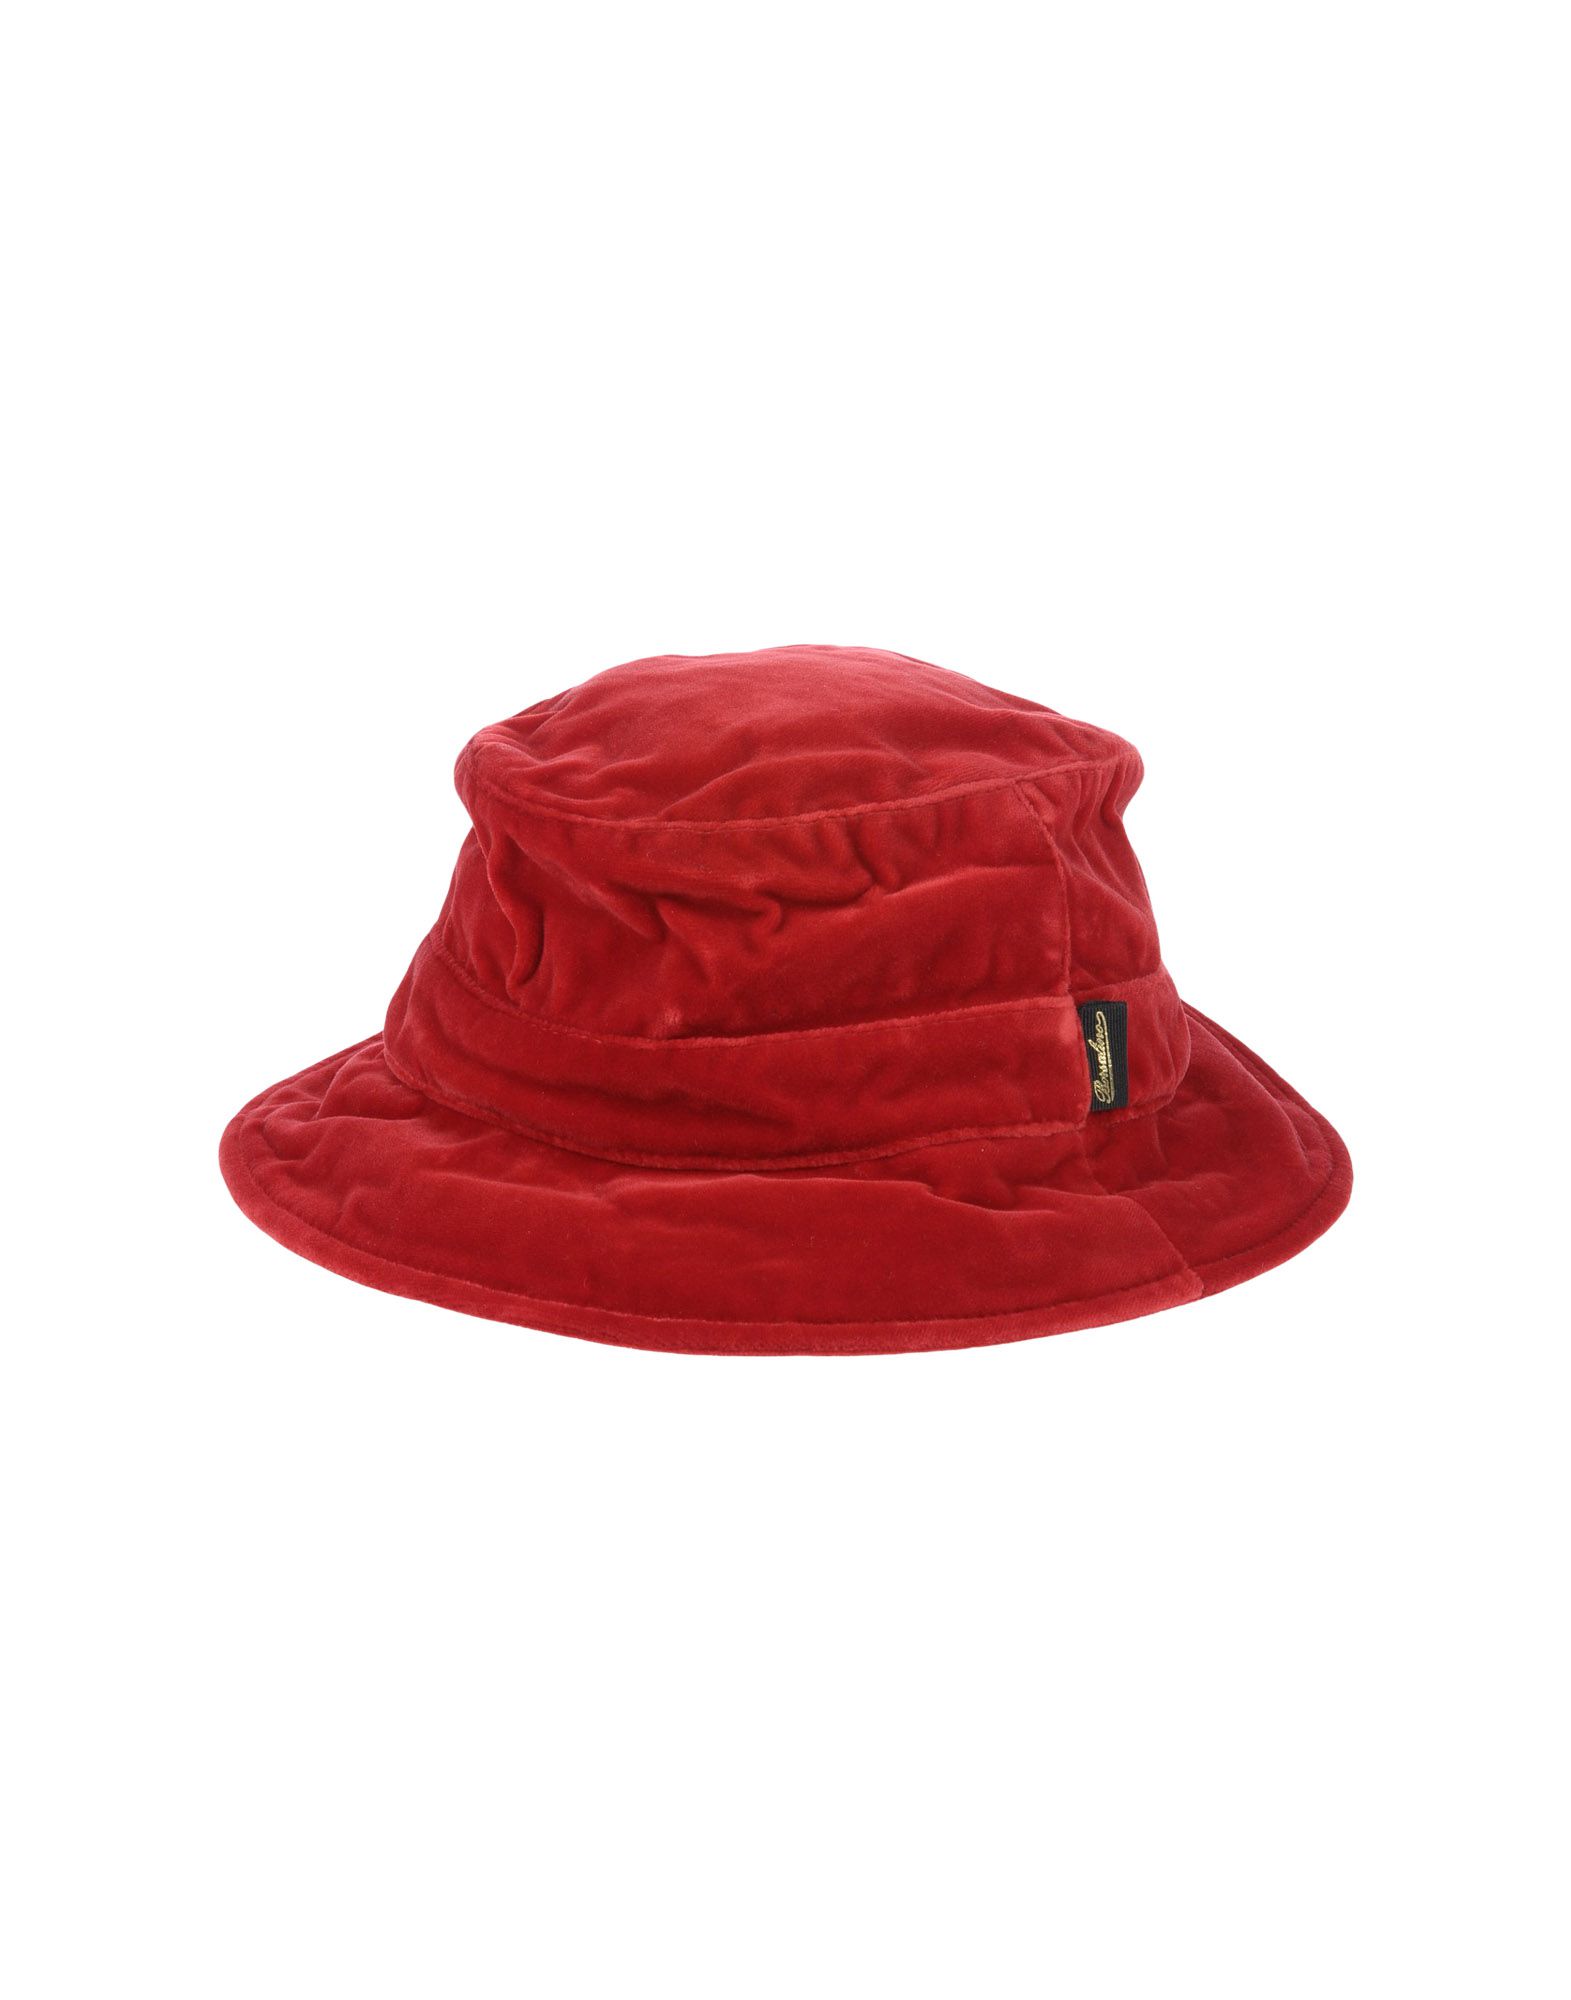 《送料無料》BORSALINO メンズ 帽子 レッド 59 コットン 100%